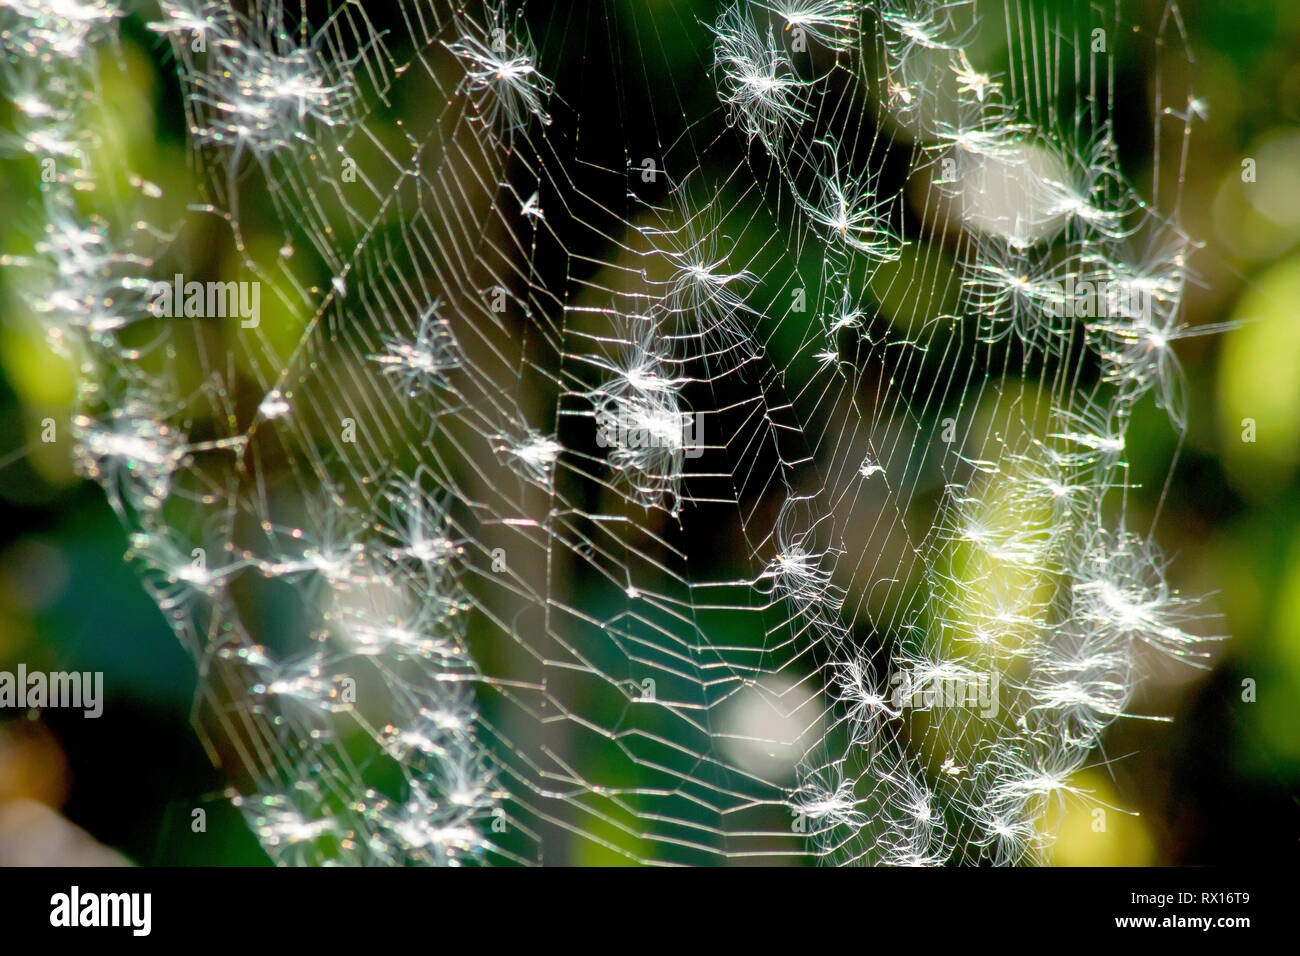 Gros plan d'une toile d'araignée rétro-éclairée recouverte de graines de Willowherb de Rosebay (epilobium, chamerion ou chamaenerion angustifolium). Banque D'Images